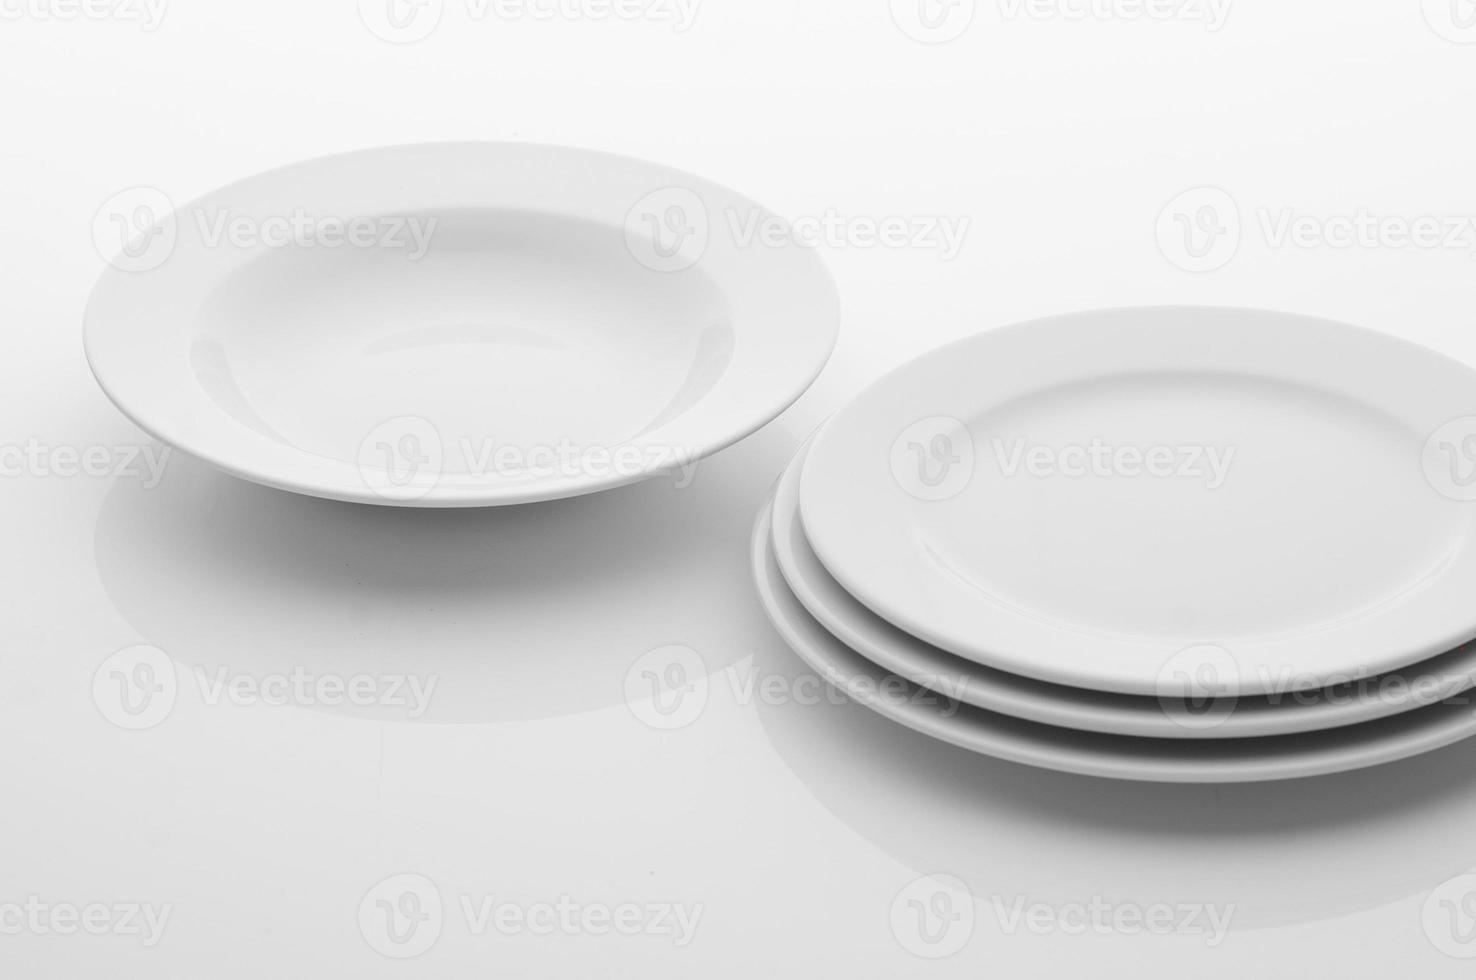 Küchen- und Restaurantutensilien, Teller, auf hellem Hintergrund foto